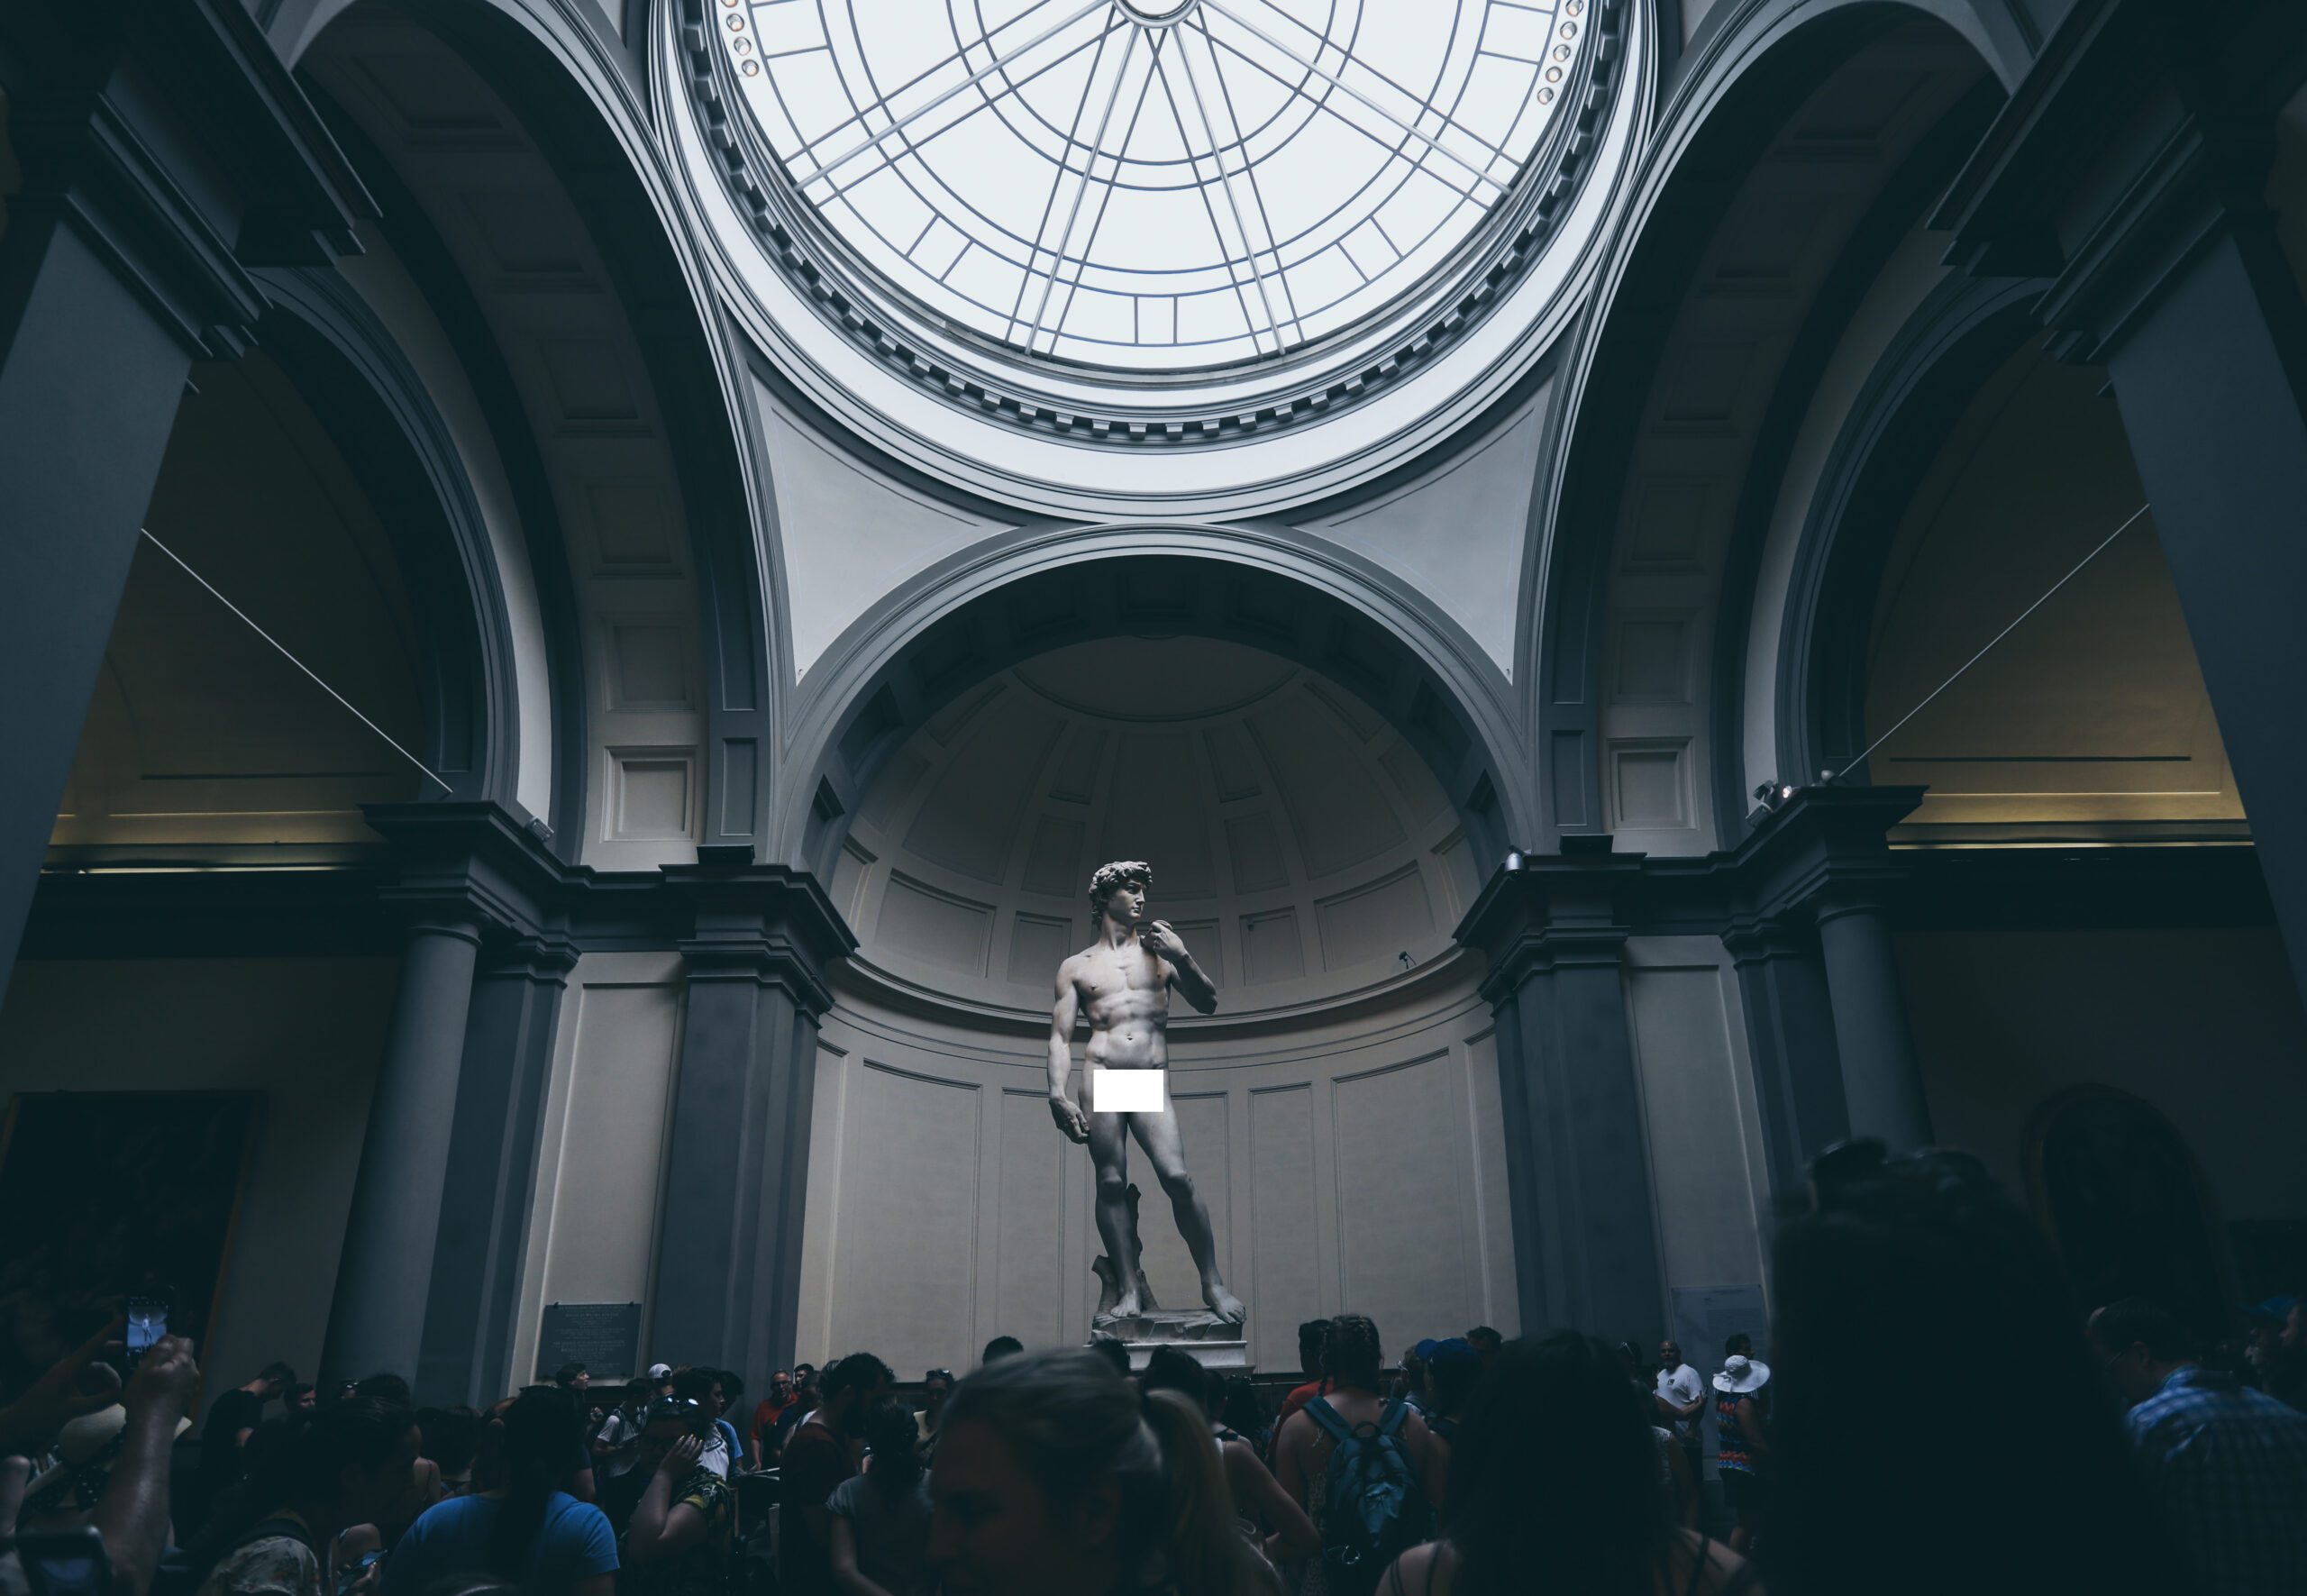 El David de Miguel Ángel: una de las esculturas más sorprendentes de la historia del arte